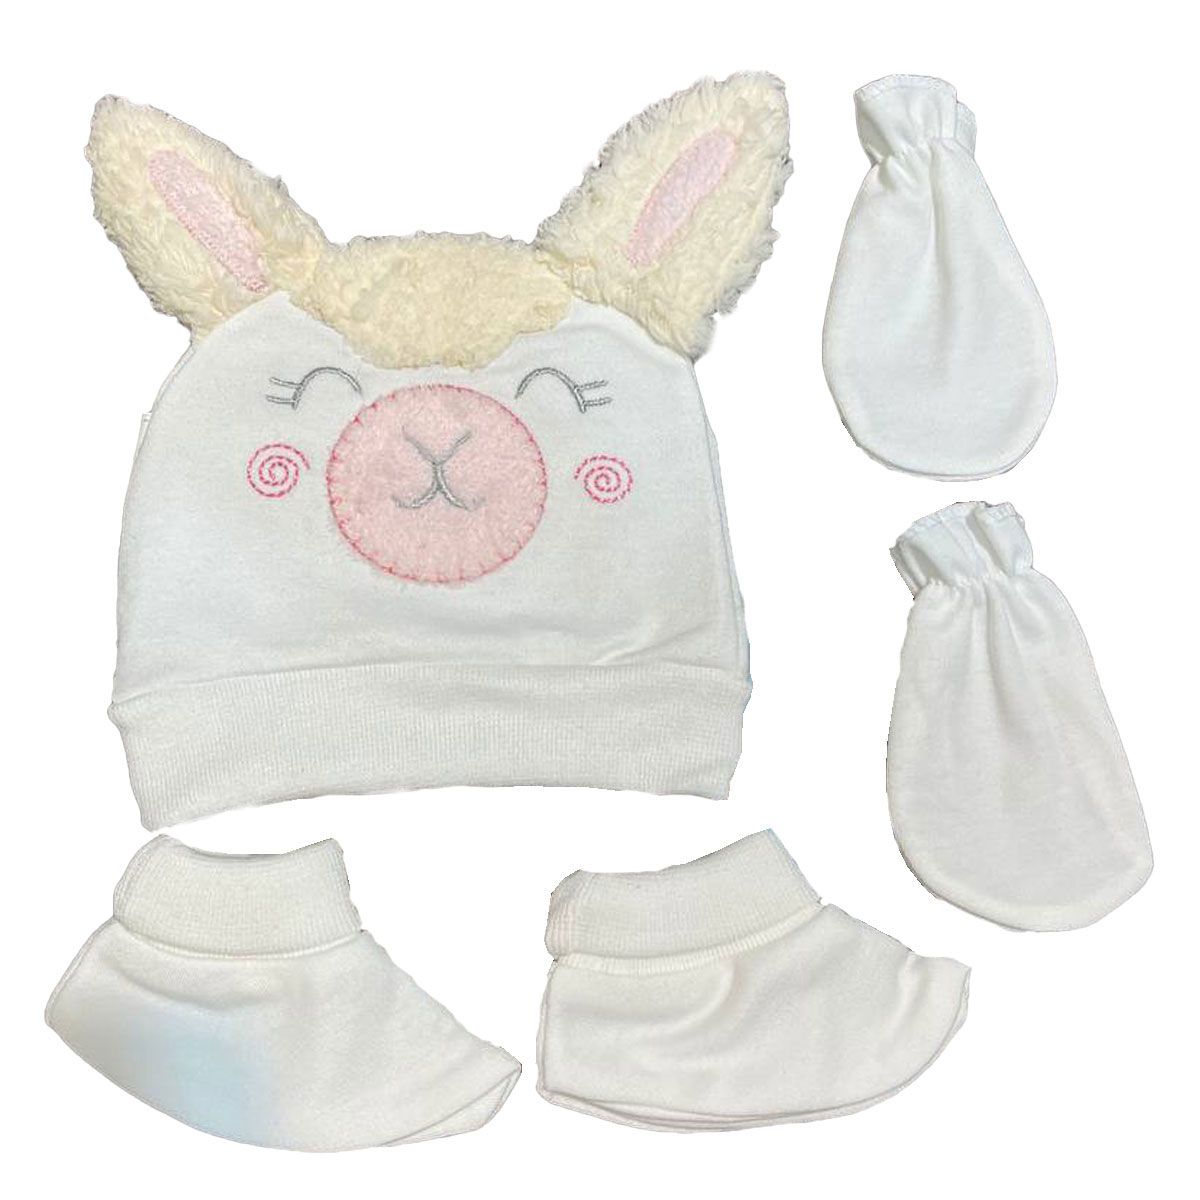 ست کلاه و دستکش و پاپوش نوزادی مادرکر مدل خرگوش -  - 1